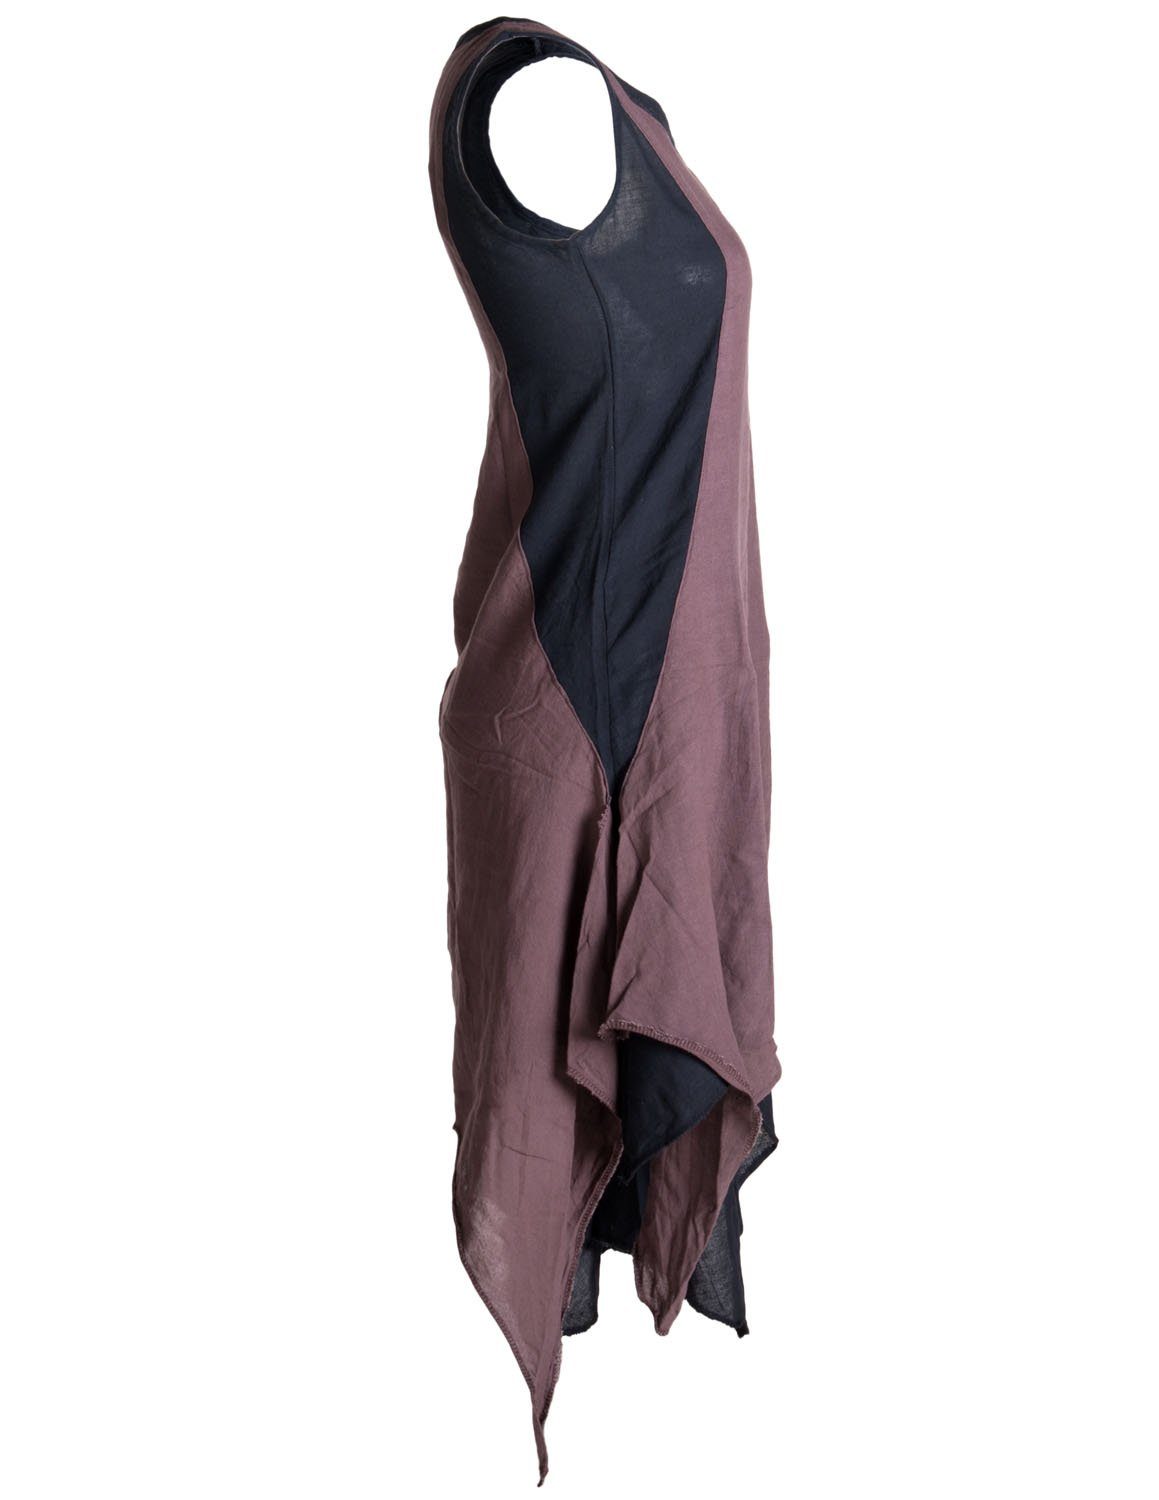 Sommerkleid Baumwolle handgewebte Lagenlook Goa, Hippie Ärmelloses schwarz-braun Vishes Kleid Boho, Style